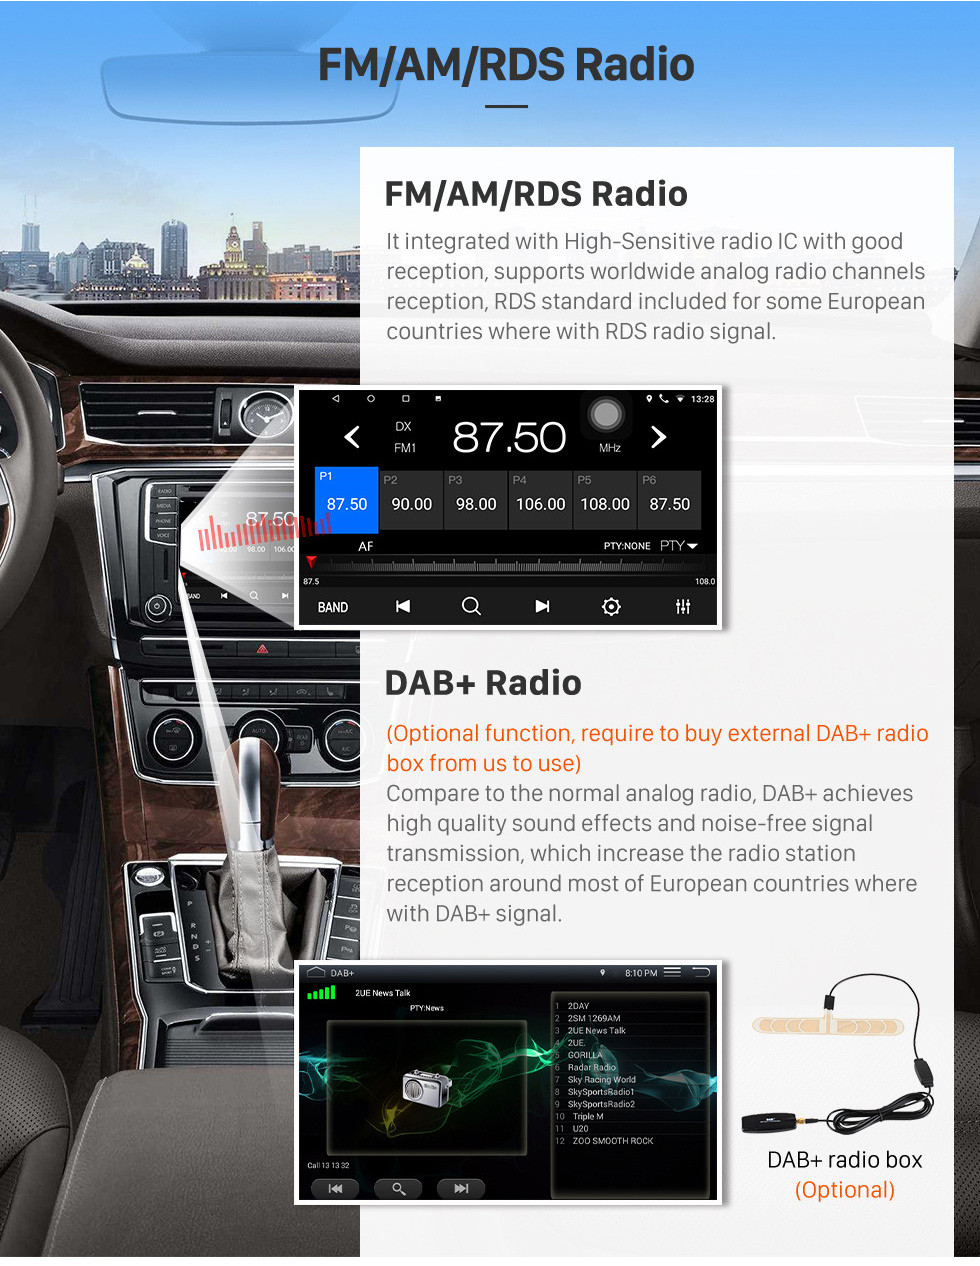 Seicane 2015-2018 Chevy Chevrolet Cruze Android 10.0 HD с сенсорным экраном 9-дюймовое головное устройство Bluetooth GPS-навигатор с поддержкой AUX OBD2 SWC Carplay